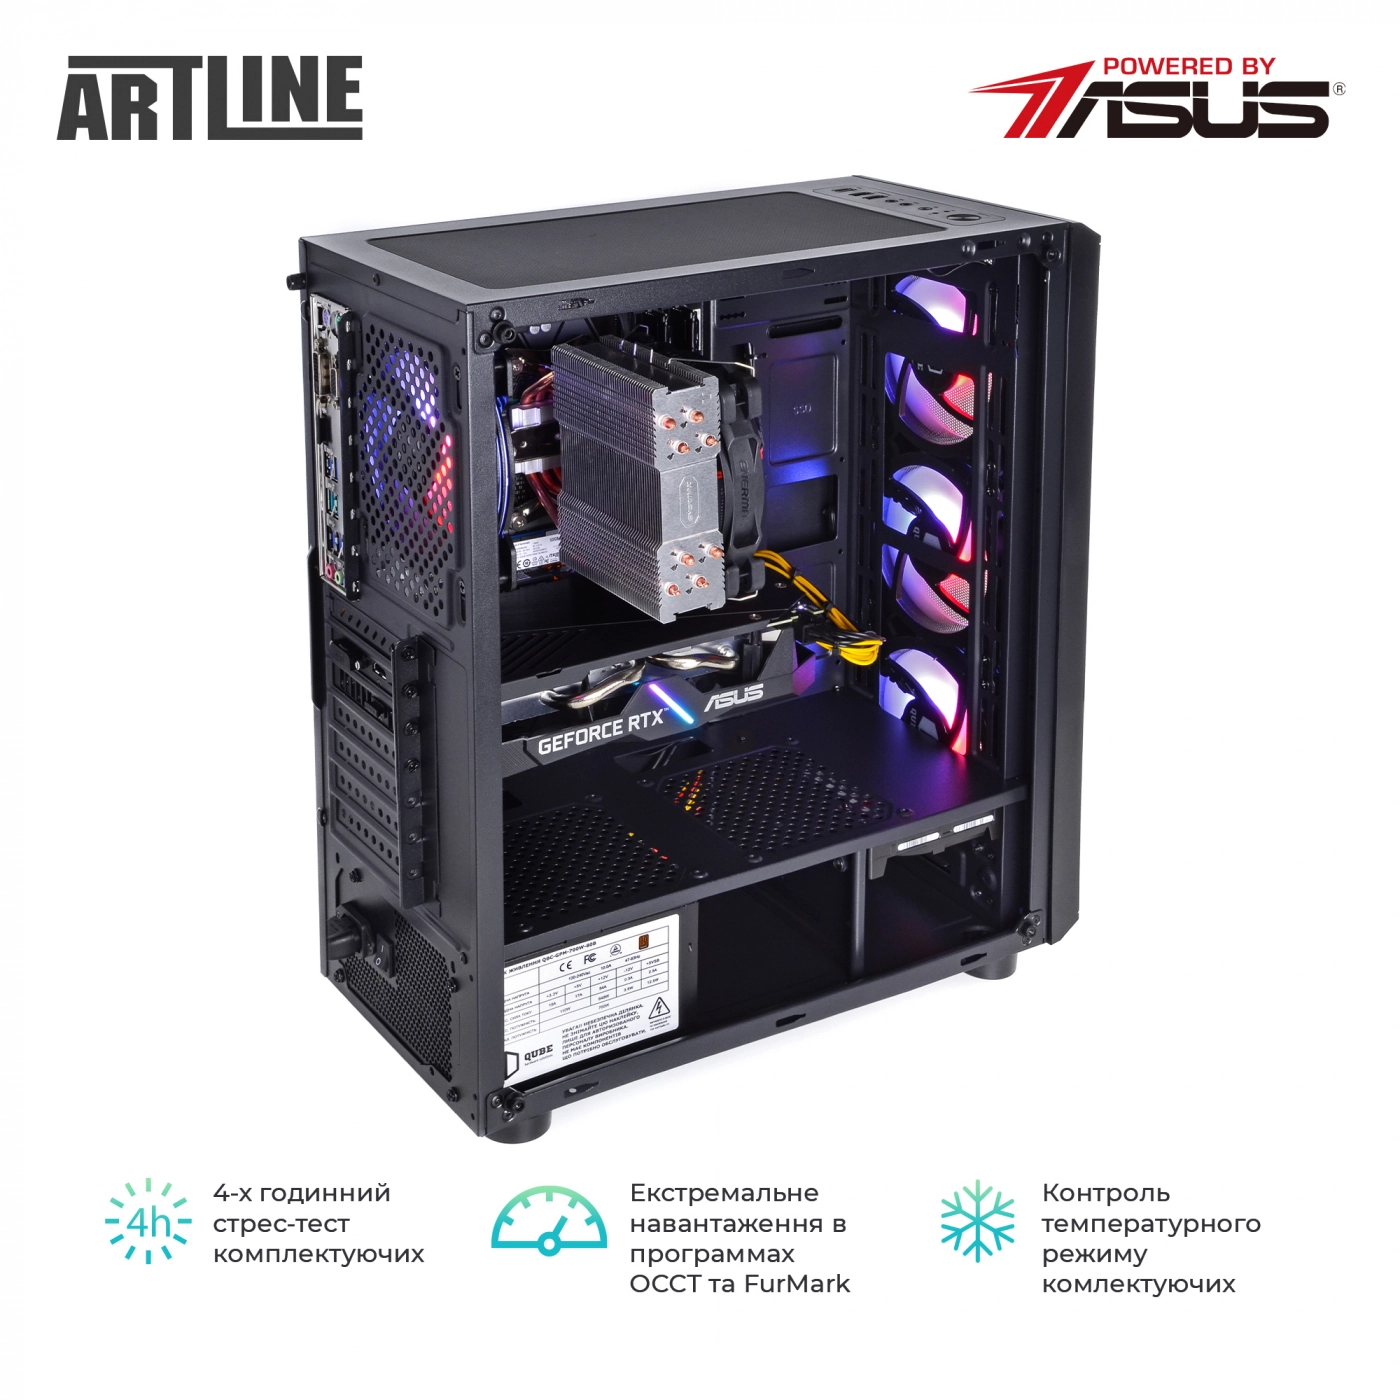 Купить Компьютер ARTLINE Gaming X75v17 - фото 9